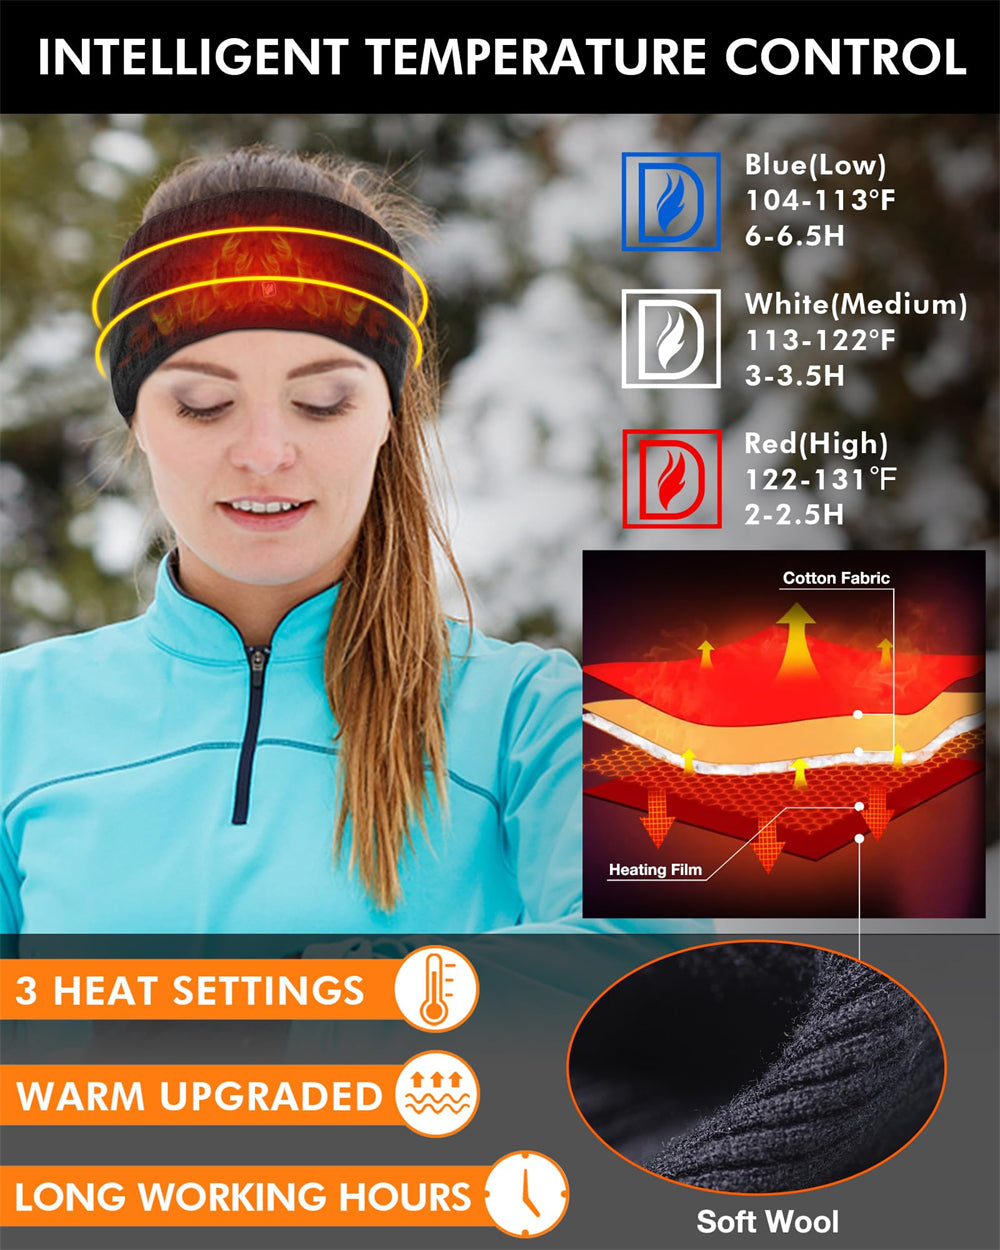 DUKUSEEK Heated Headbands Men Women with 7.4V Rechargable Battery for Winter Work Outdoor Activity